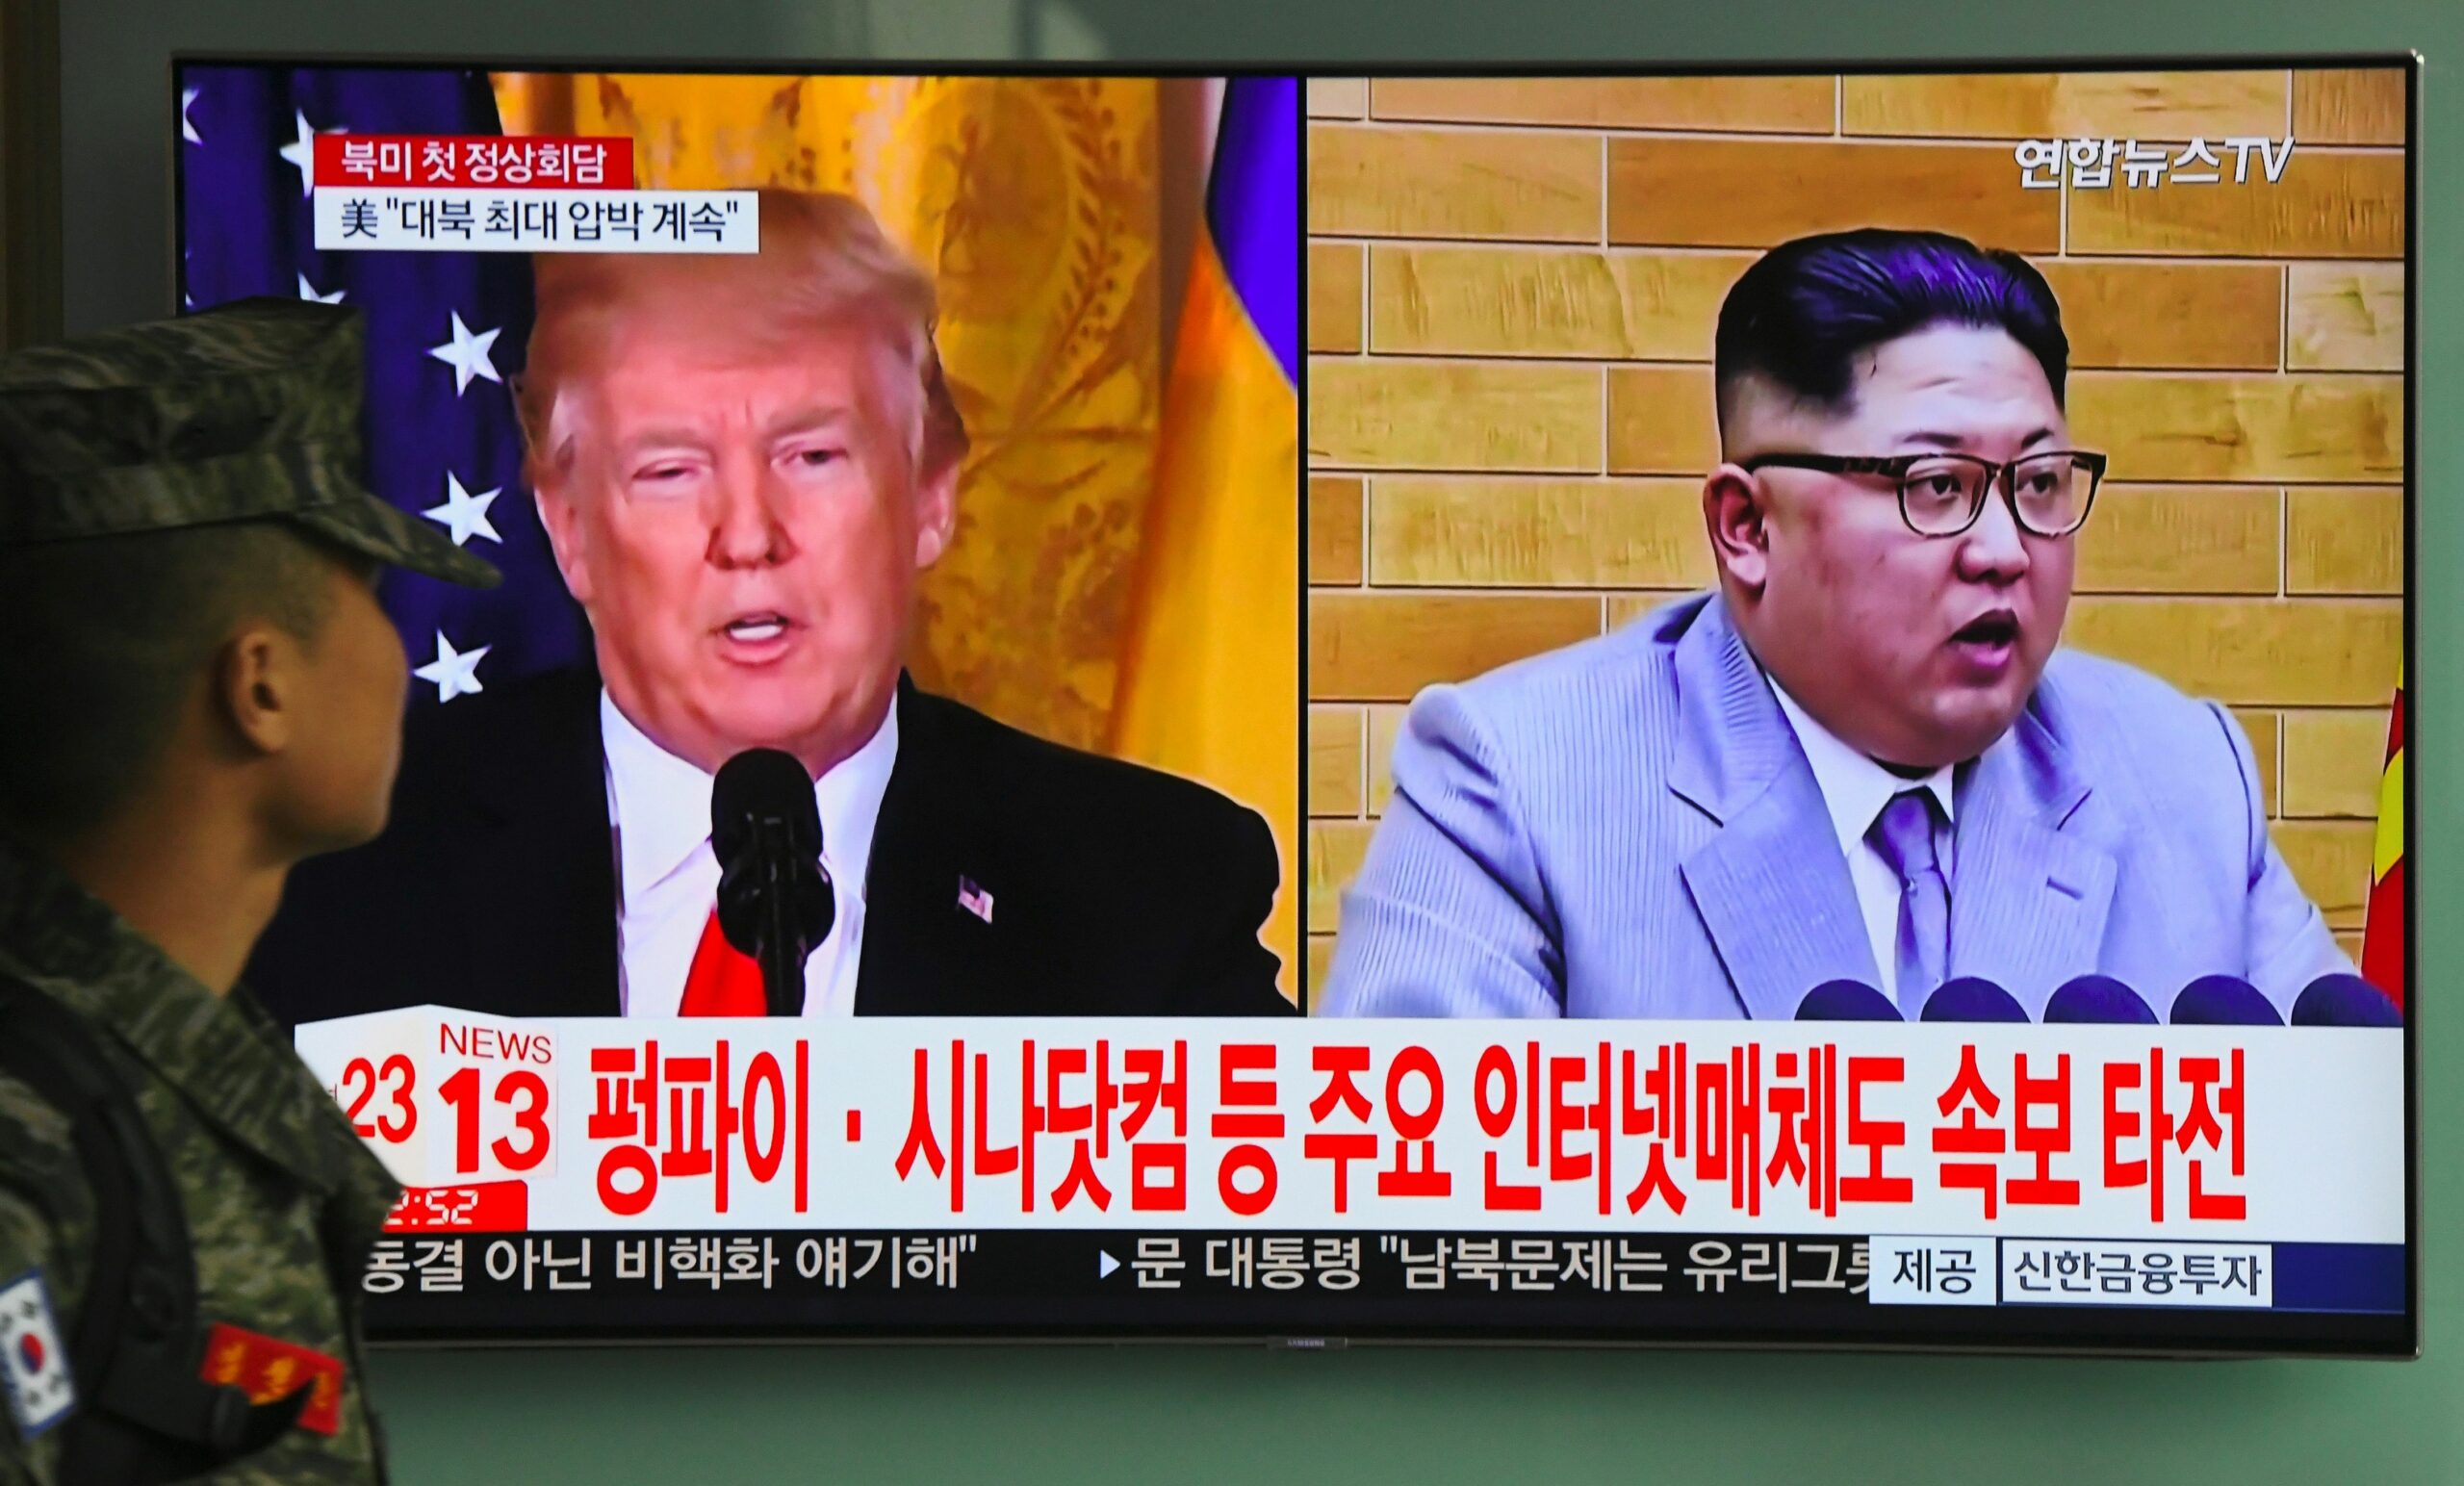 North Korea | Understanding summit goals